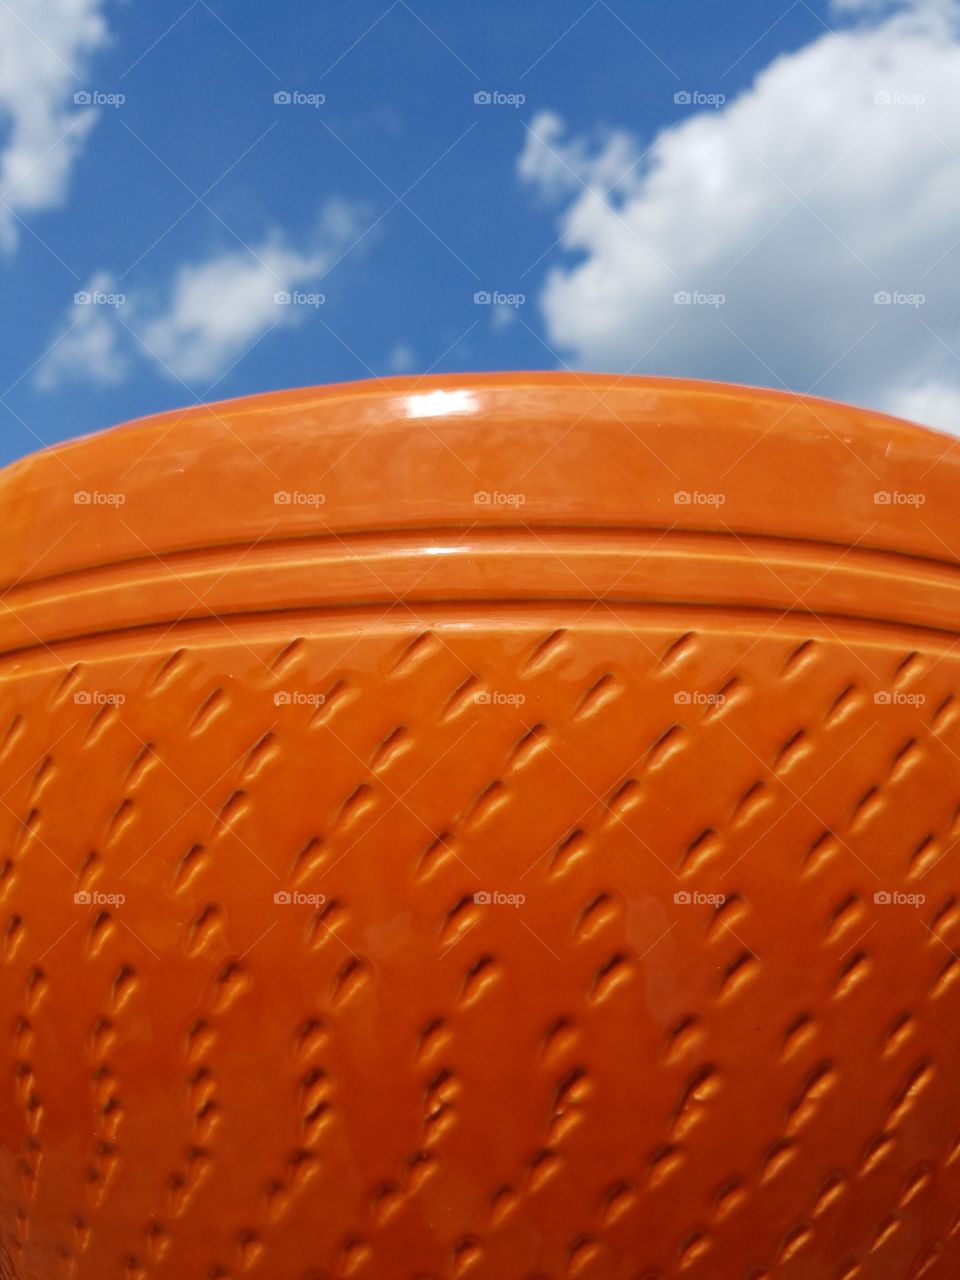 big orange pot in the sky